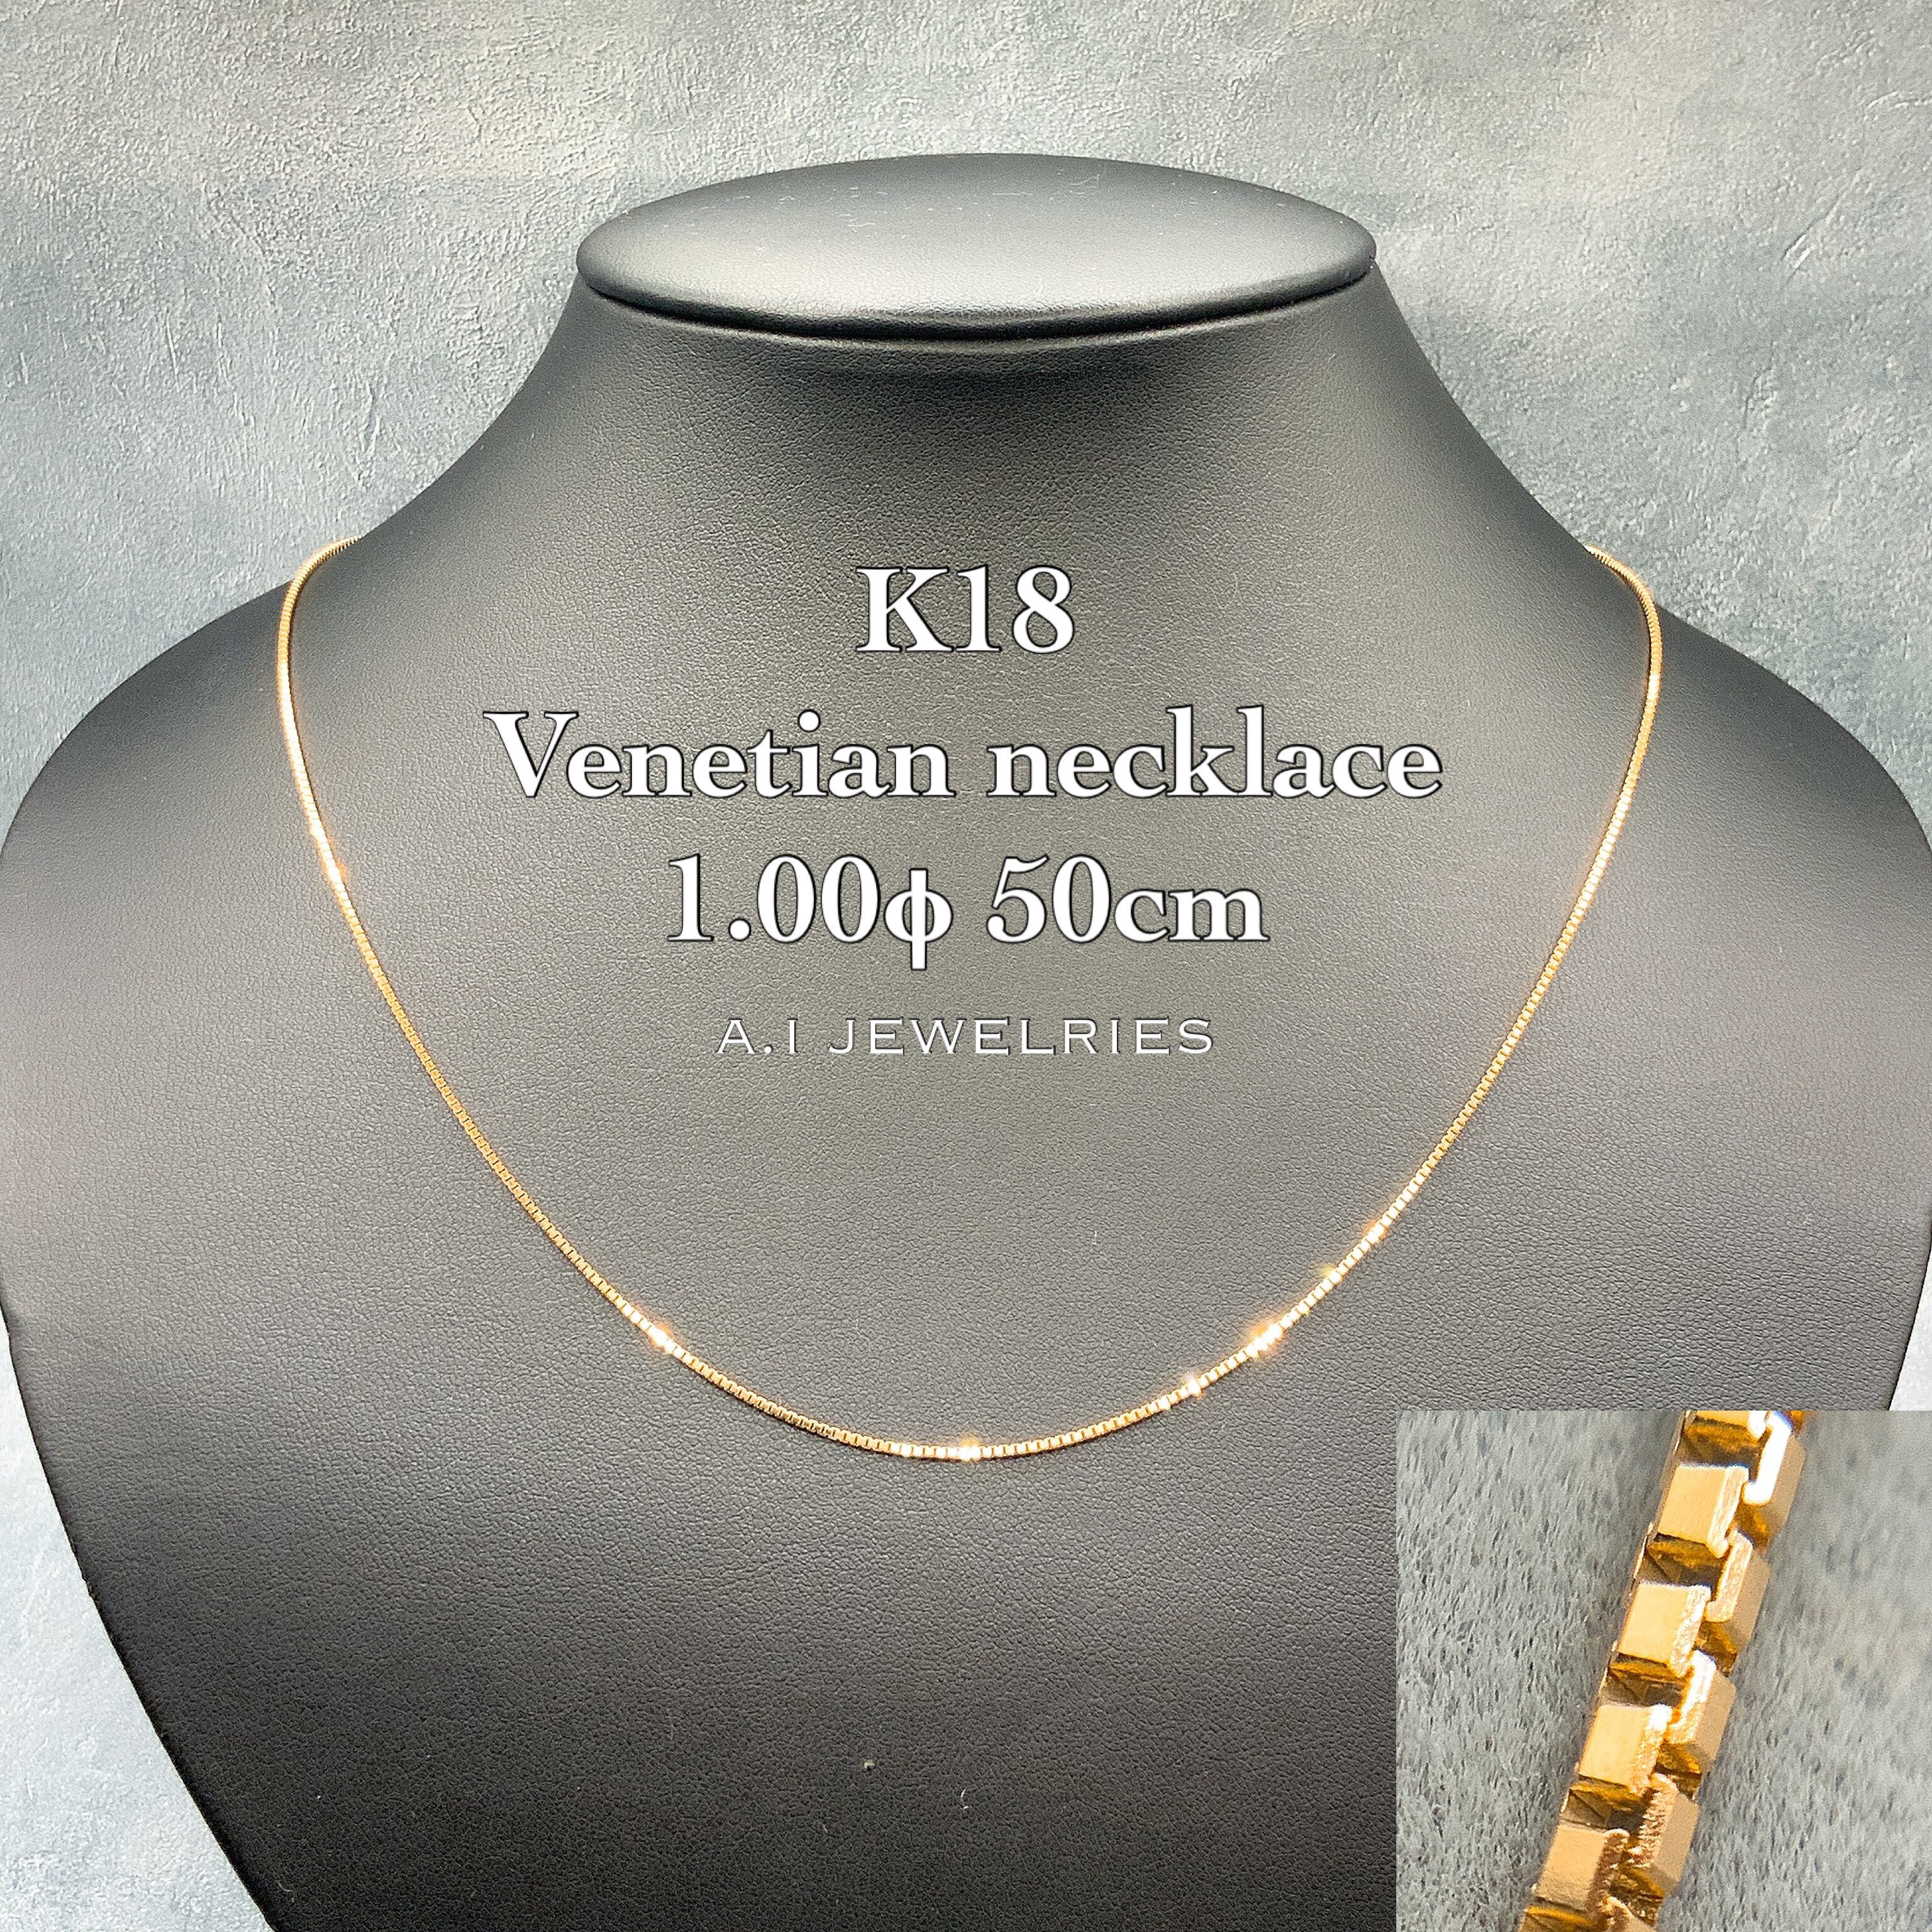 18金 ベネチアン ネックレス メンズ 1.00φ 50cm /K18 Venetian necklace 1.00φ 50cm  品番kvn100-50 JEWELRIES エイアイジュエリーズ